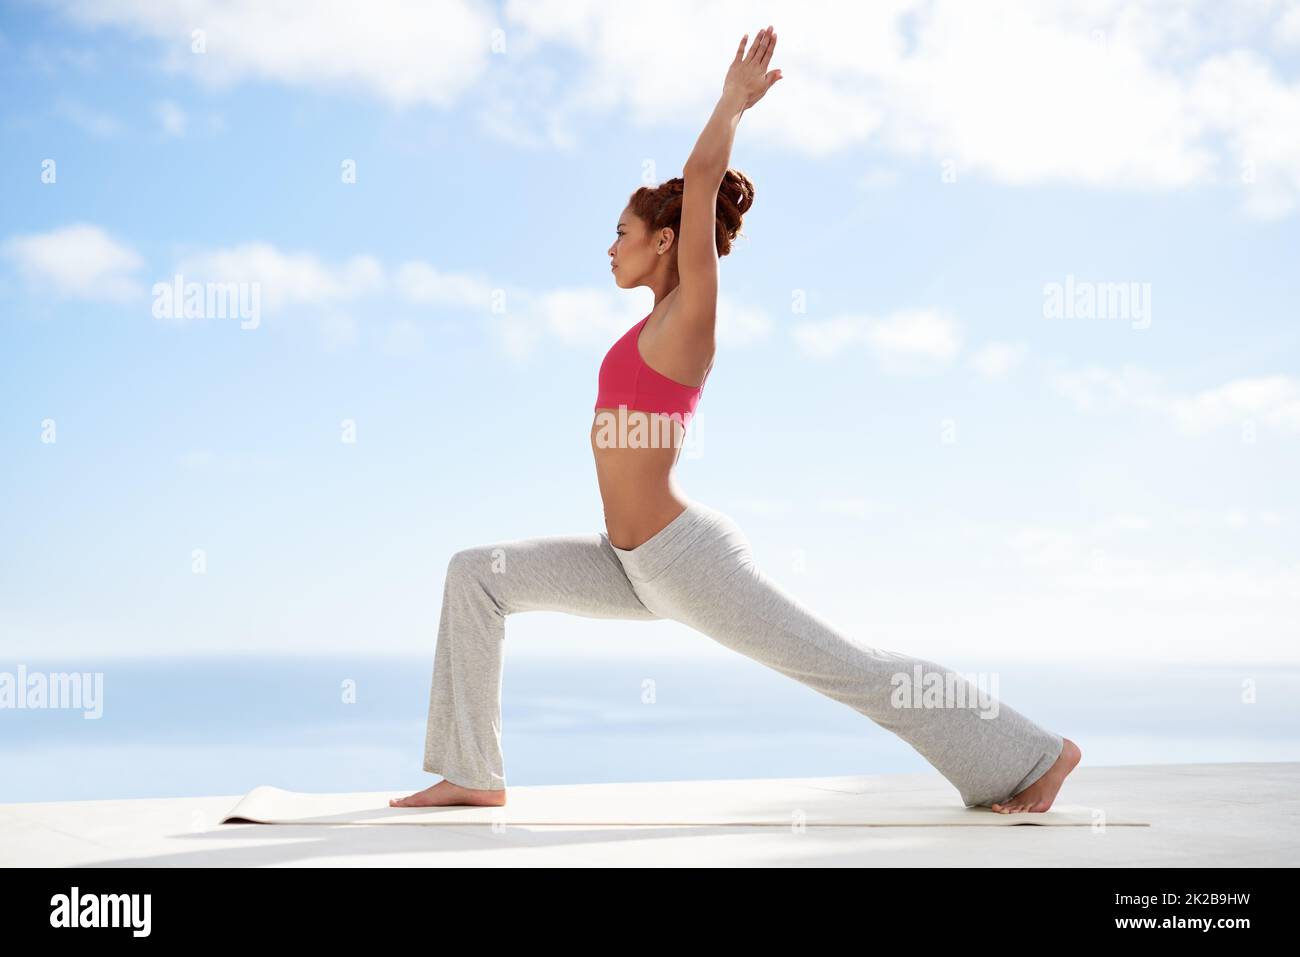 Équilibre entre le corps et l'esprit. Photo d'une jeune femme pratiquant le yoga à l'extérieur par une journée ensoleillée. Banque D'Images